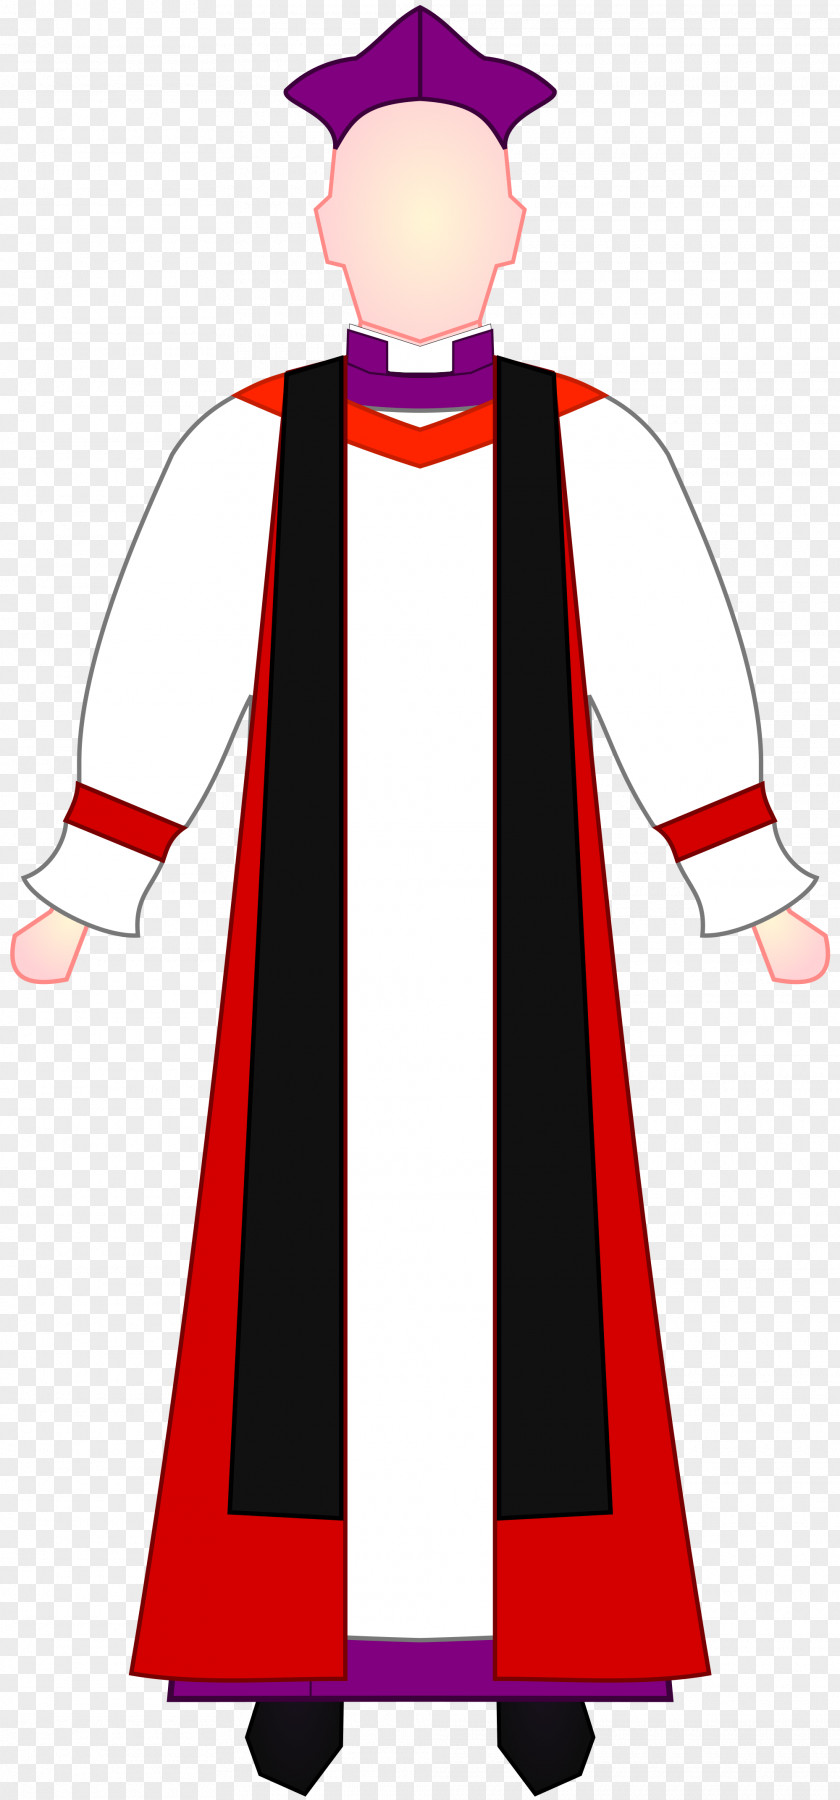 Red Dress Choir Robe Clothing Bishop PNG